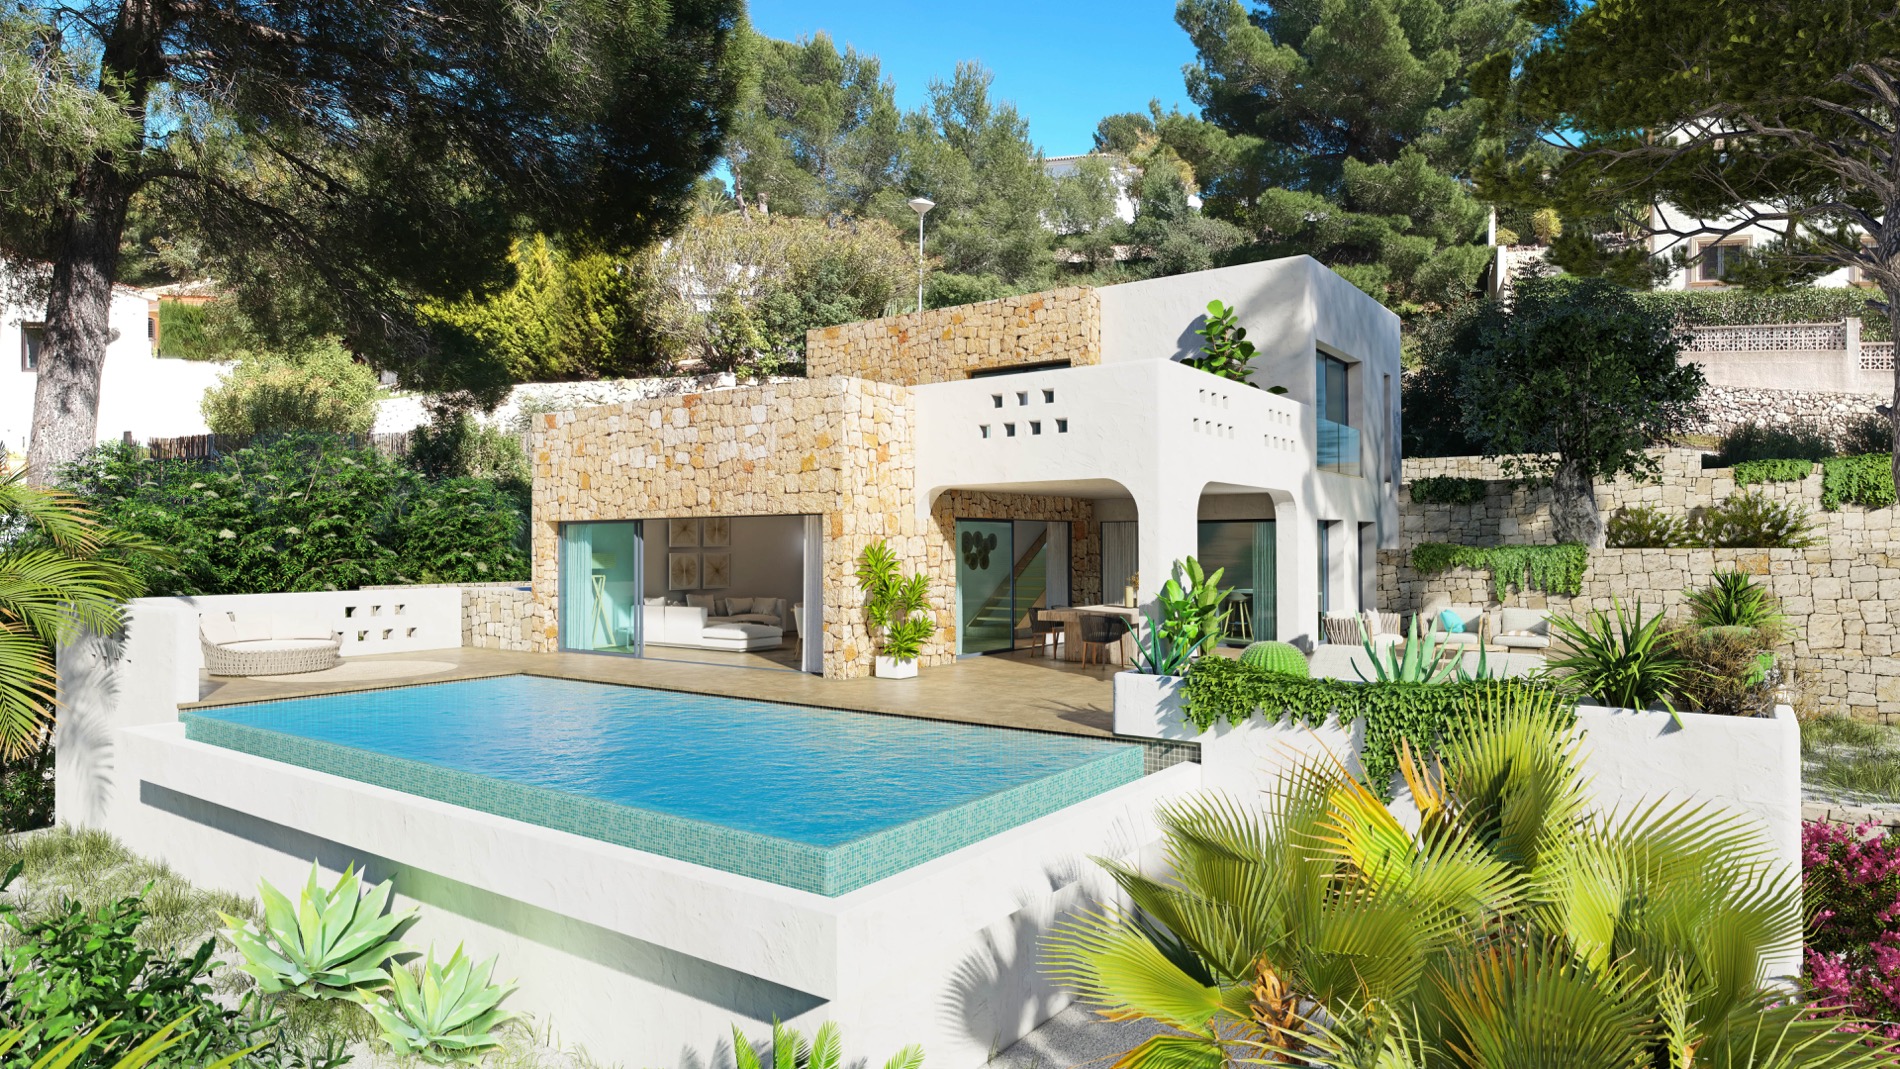 Chalet estilo Ibiza moderno en urbanización San Jaime Benissa